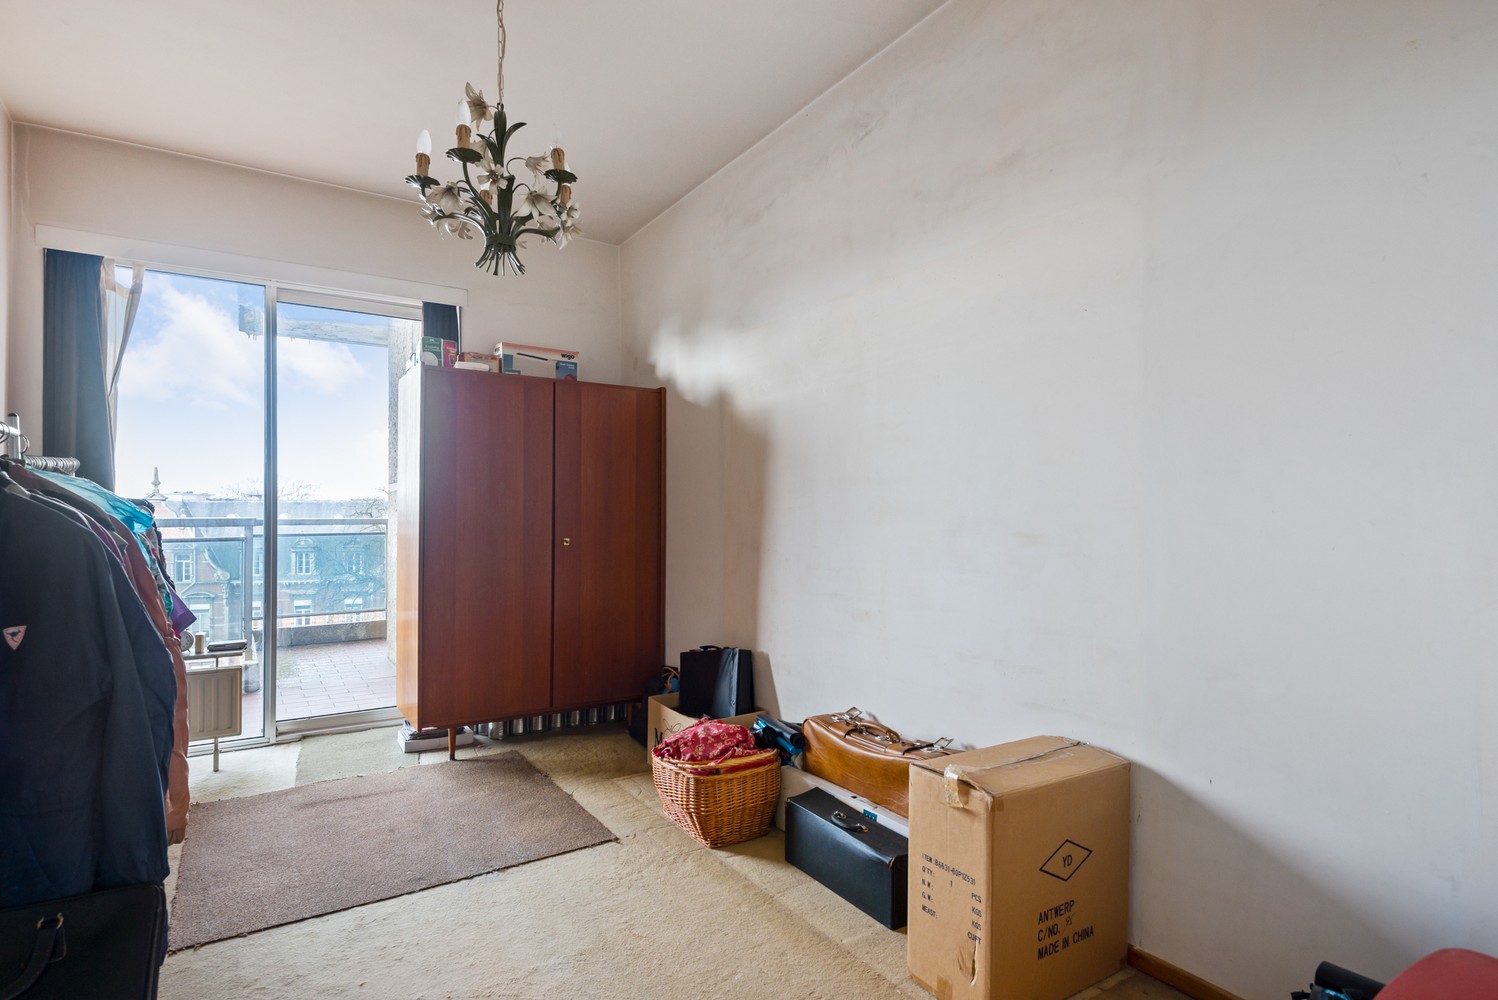 Te renoveren appartement met 2 slaapkamers, 2 terrassen én garagebox in Berchem! afbeelding 13